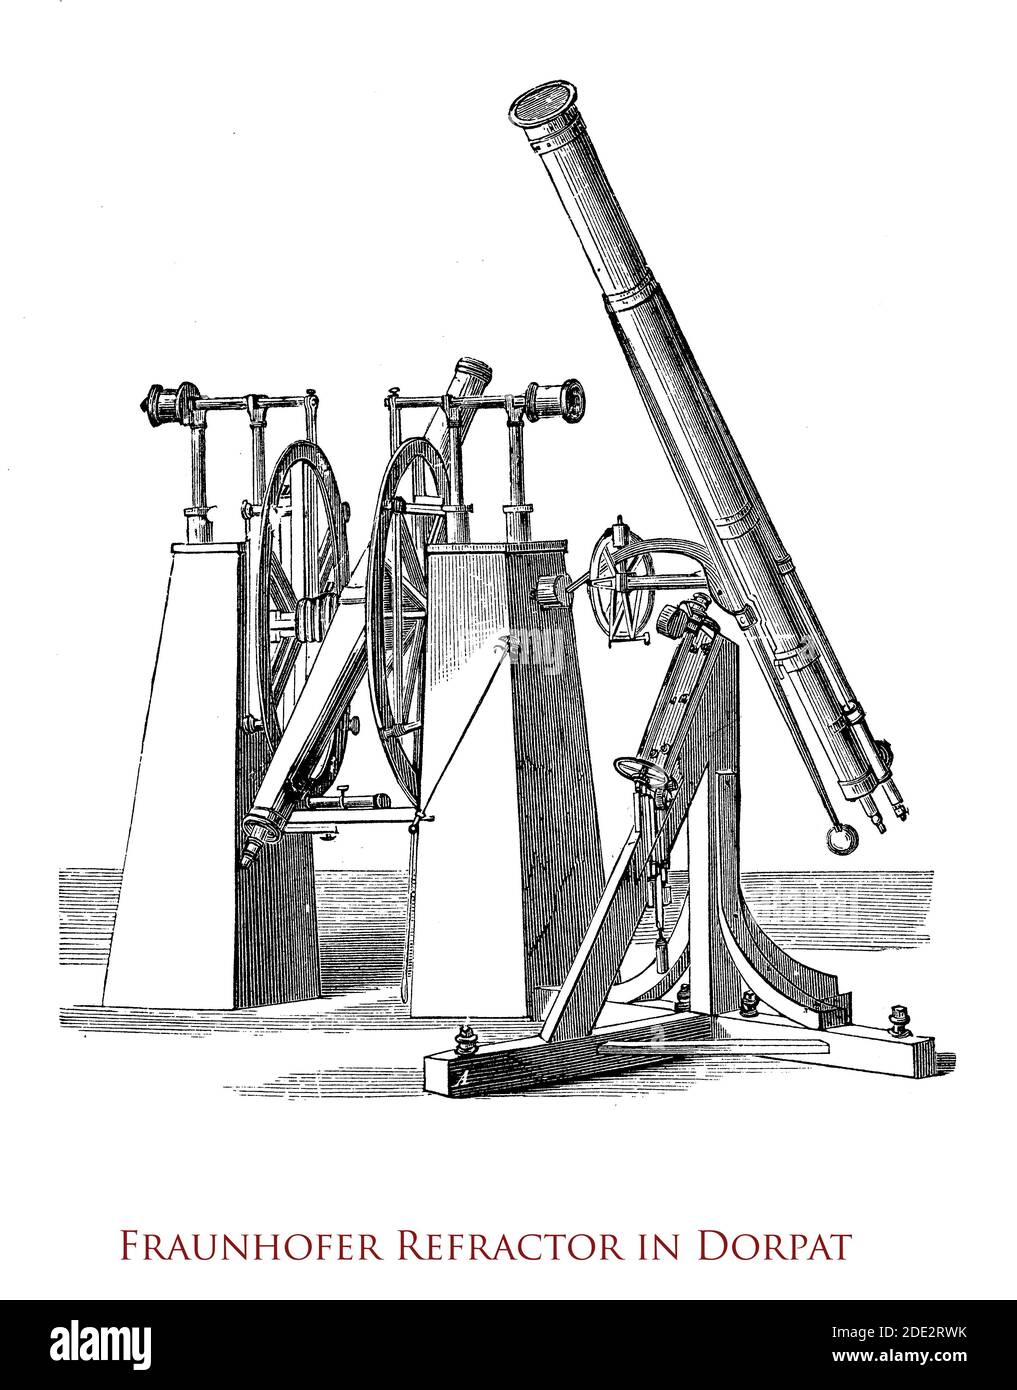 Der große Dorpat-Refraktor von Joseph von Fraunhofer, der 1824 am Dorpat-Observatorium in Estland gebaut wurde, war damals das größere Refraktionsteleskop. Stockfoto